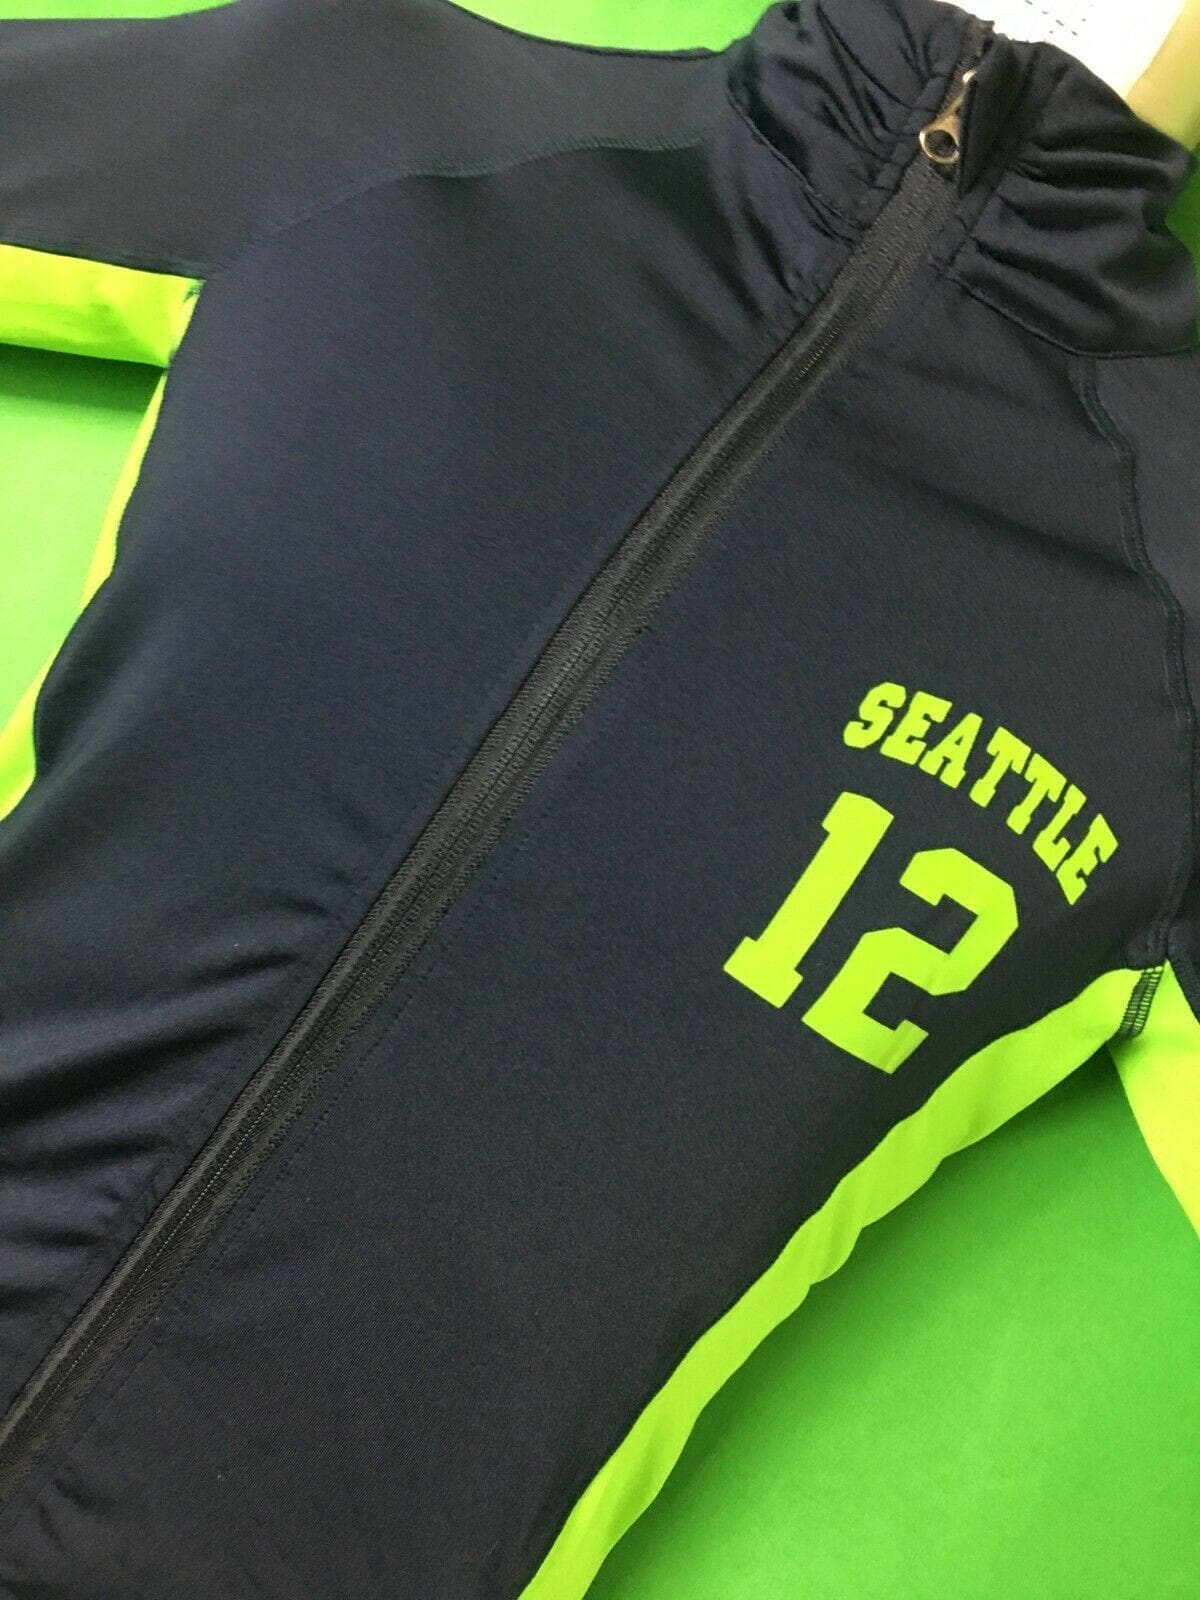 NFL Seattle Seahawks "Seattle" Track Jacket Women's X-Small